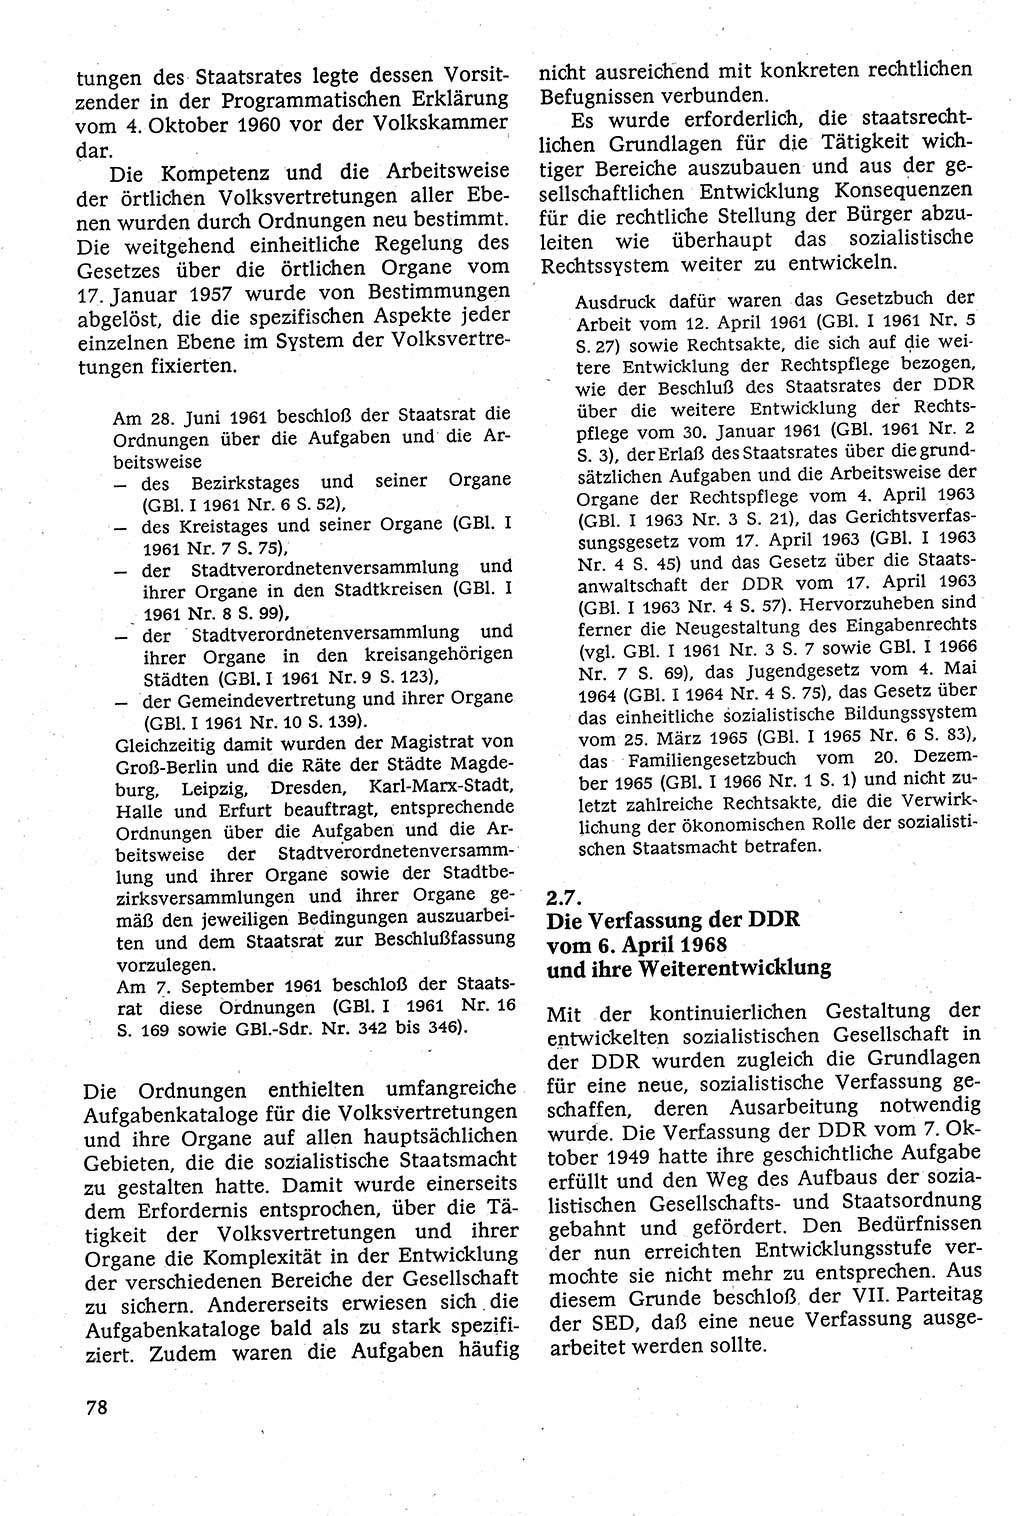 Staatsrecht der DDR [Deutsche Demokratische Republik (DDR)], Lehrbuch 1984, Seite 78 (St.-R. DDR Lb. 1984, S. 78)